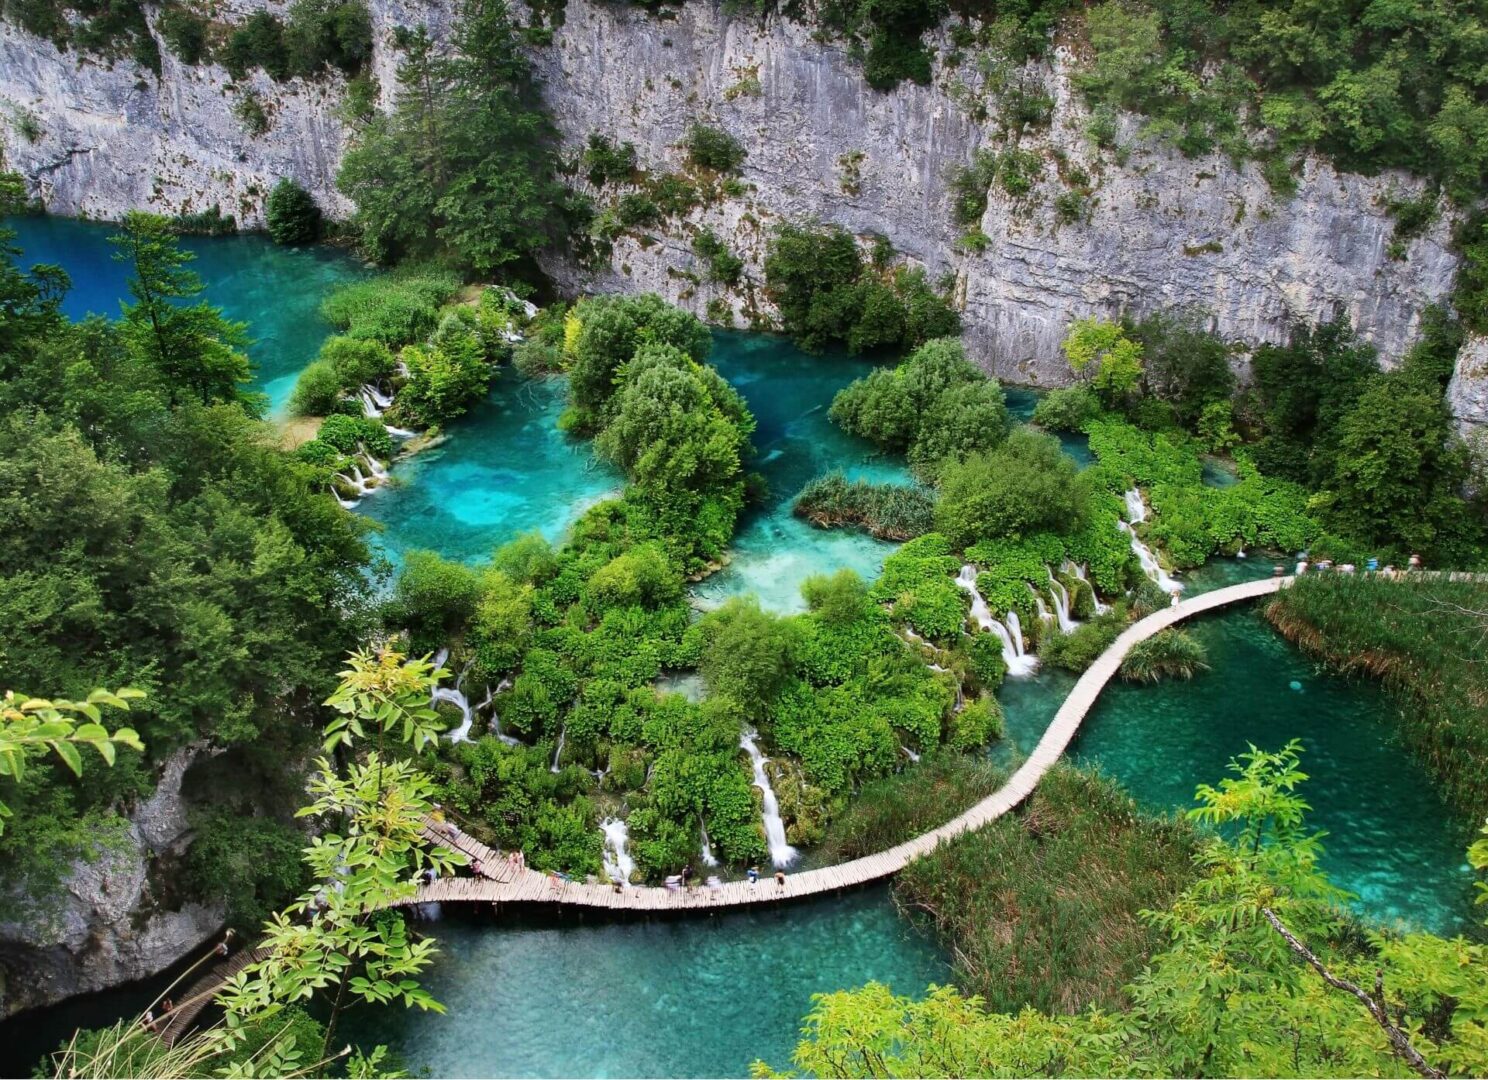 La Croatie trésors Dalmates, Chute de Krka. JVO Voyages votre agence de voyages en groupe par excellence, organise des excursions.